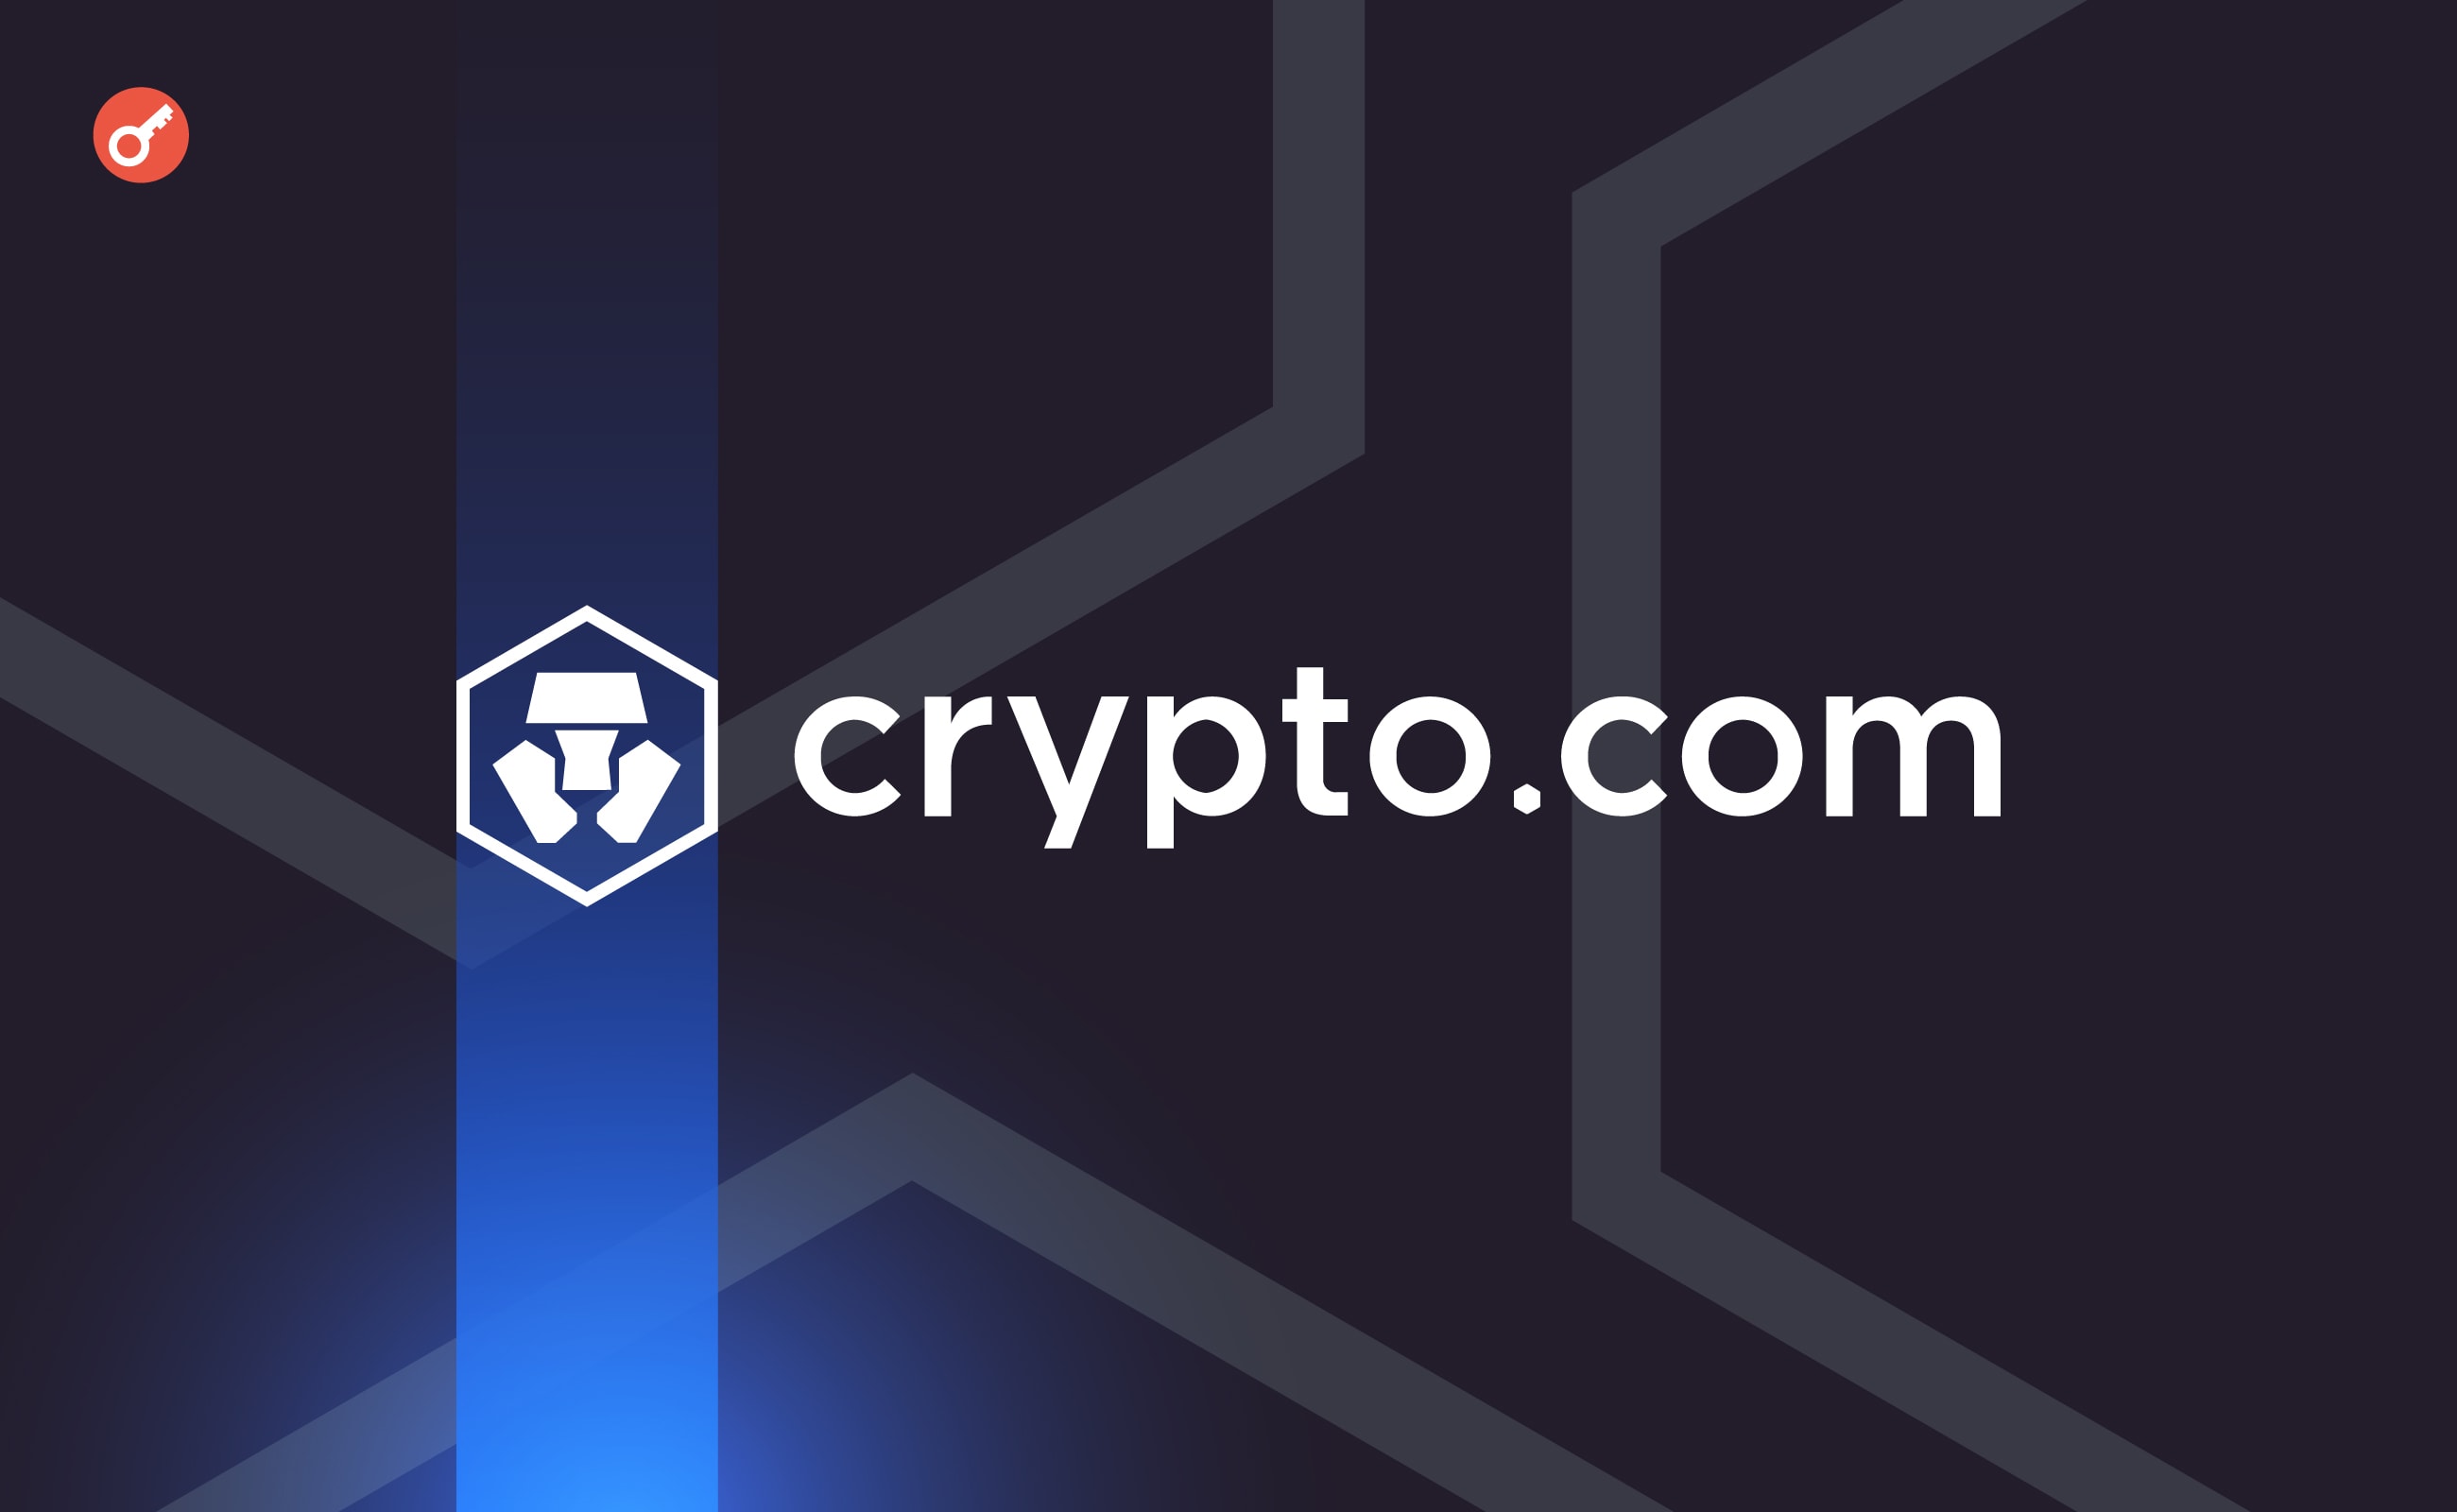 Біржа Crypto.com отримала ліцензію в ОАЕ. Головний колаж новини.